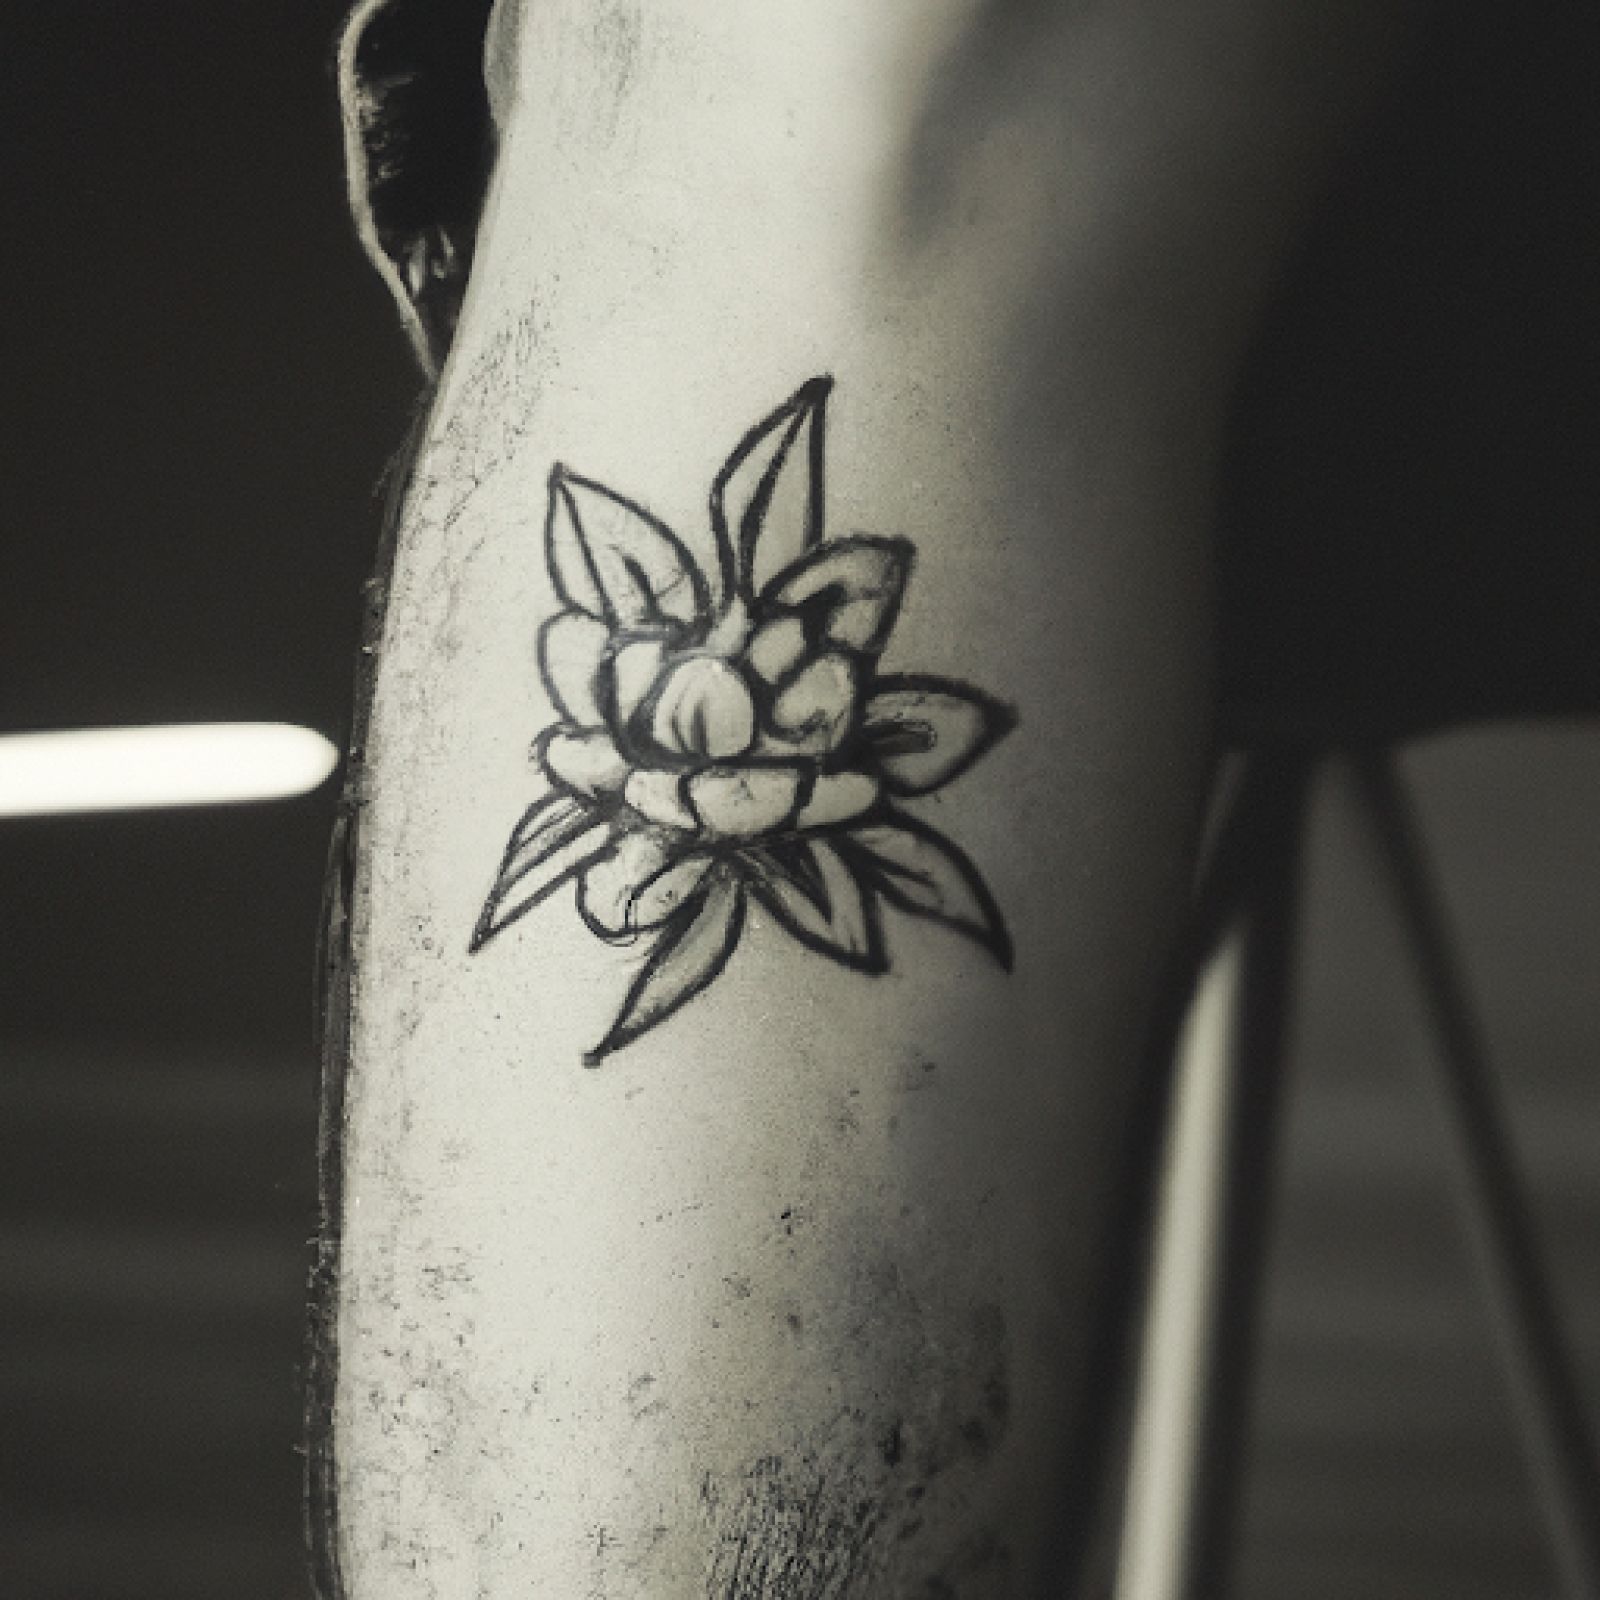 Flower tattoo on knee for men